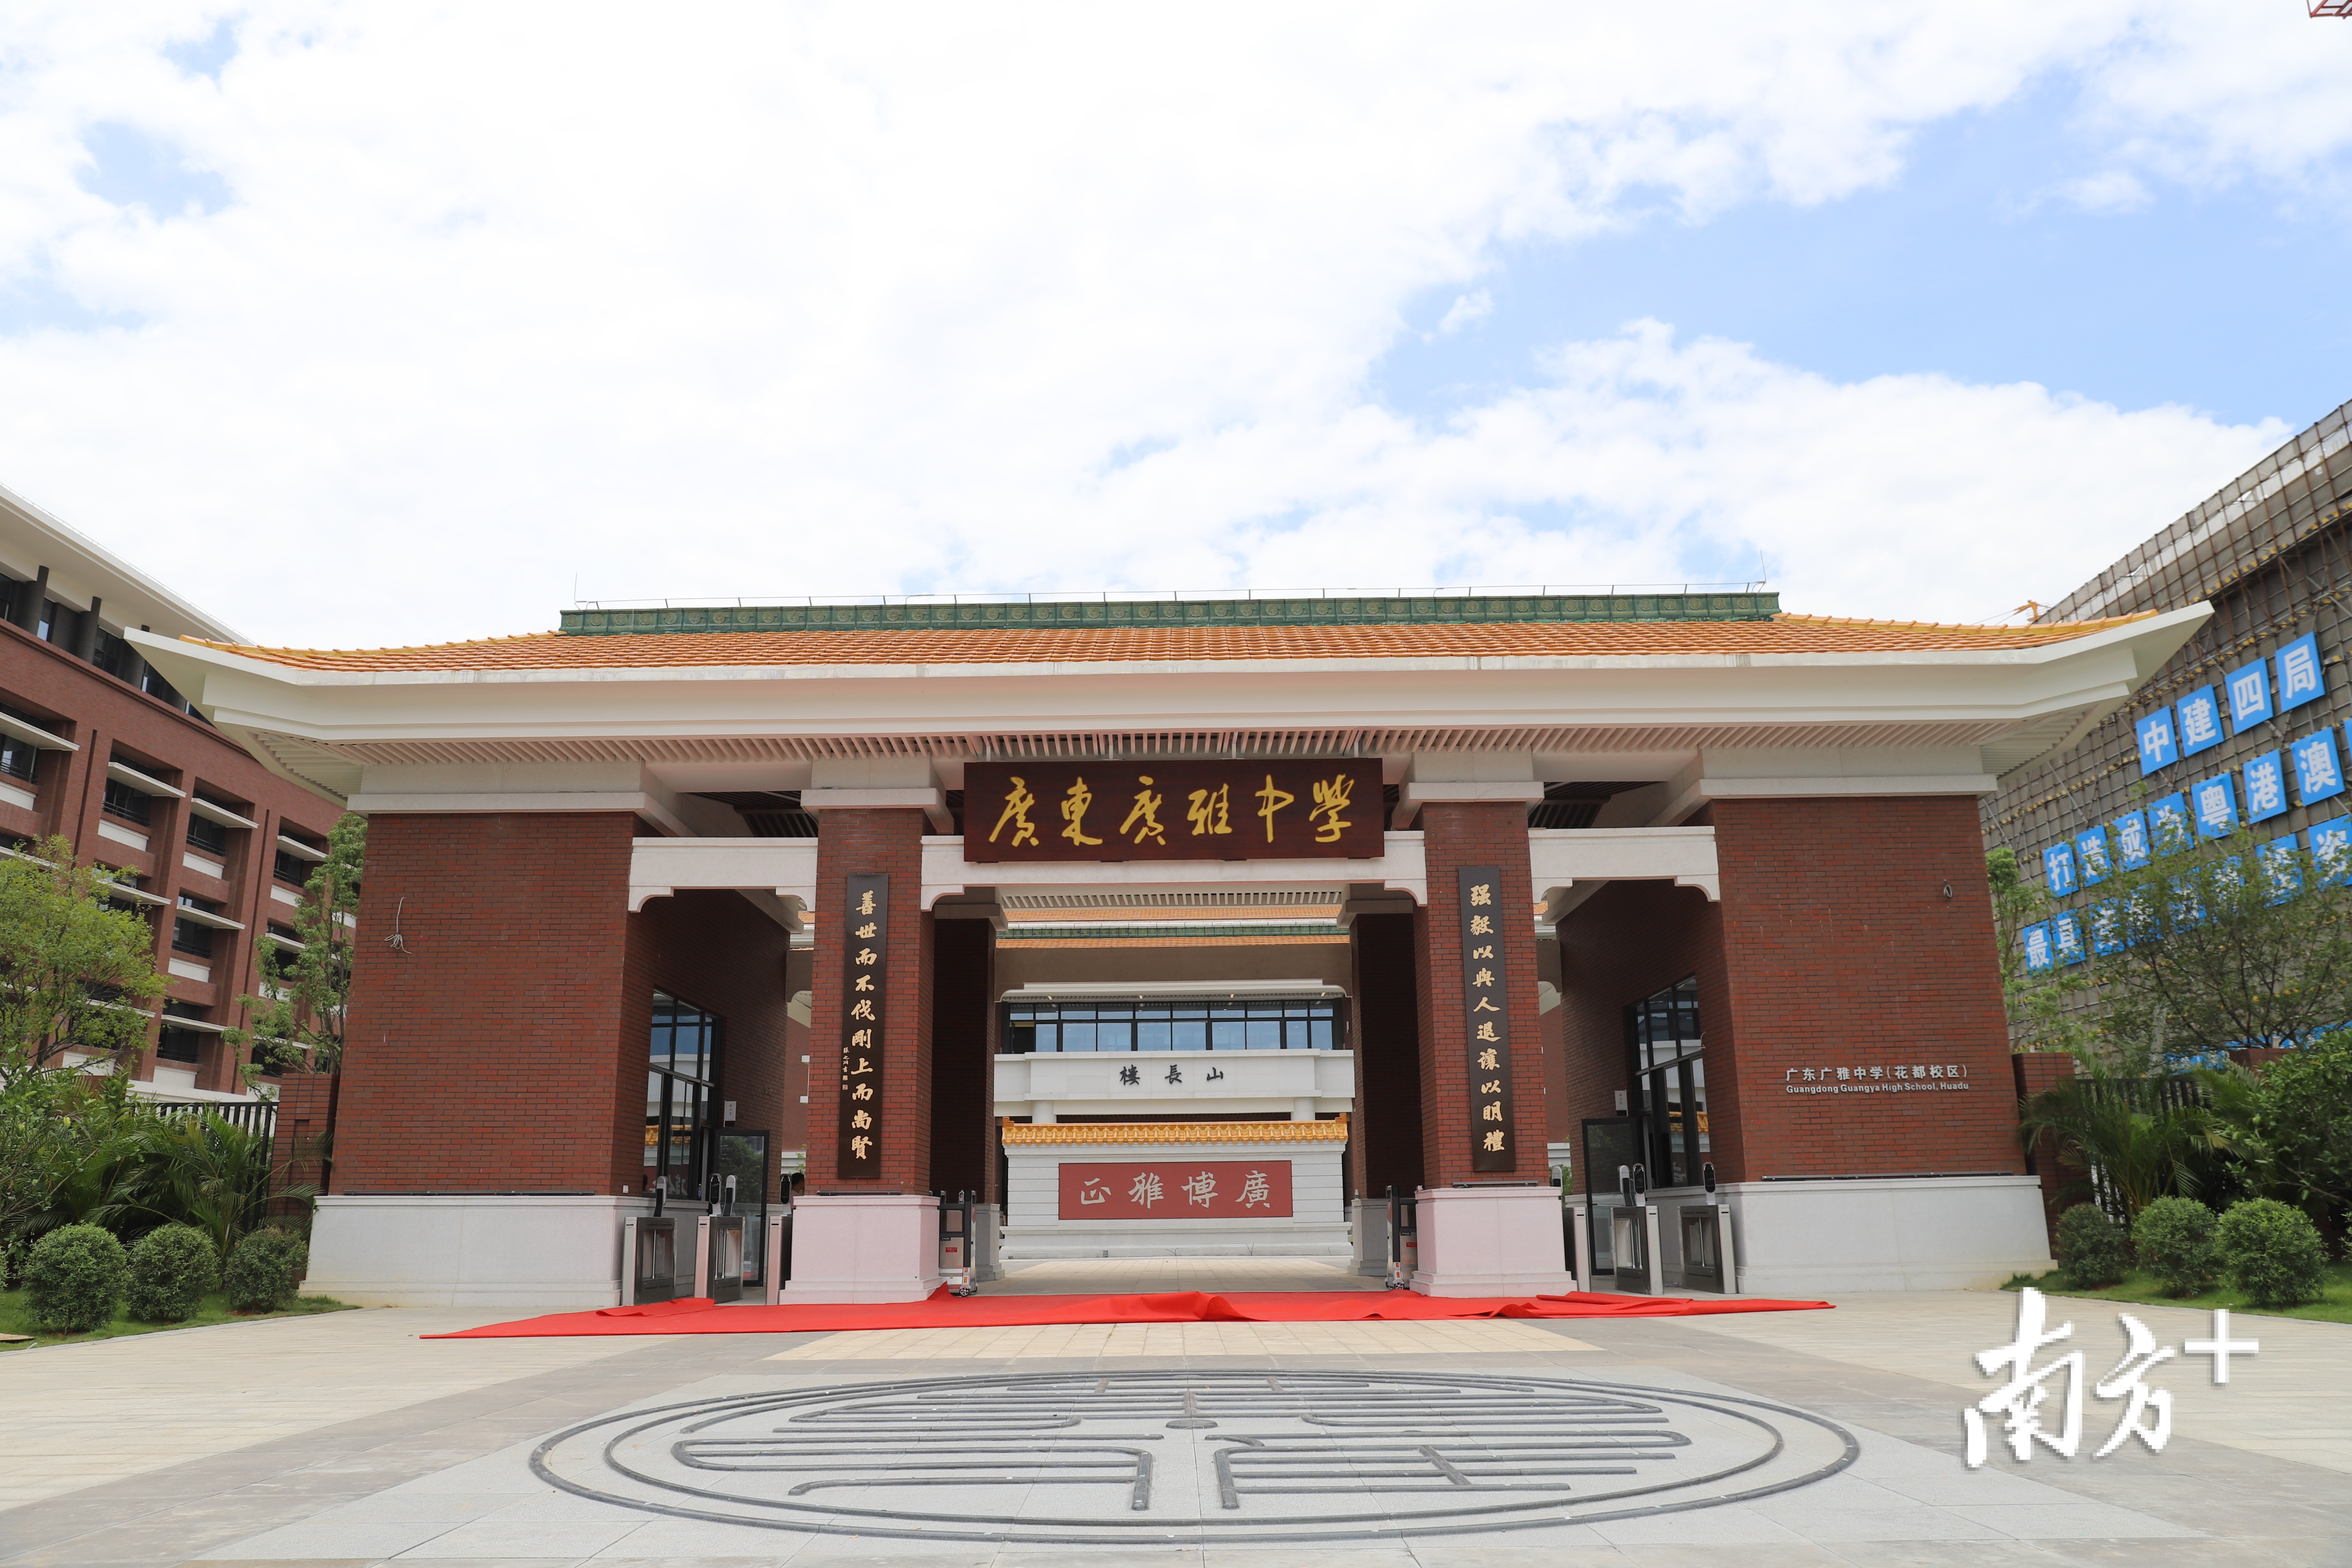 隶属于广州市教育局;在办学规模上,广雅中学将设置高中30个班,初中30